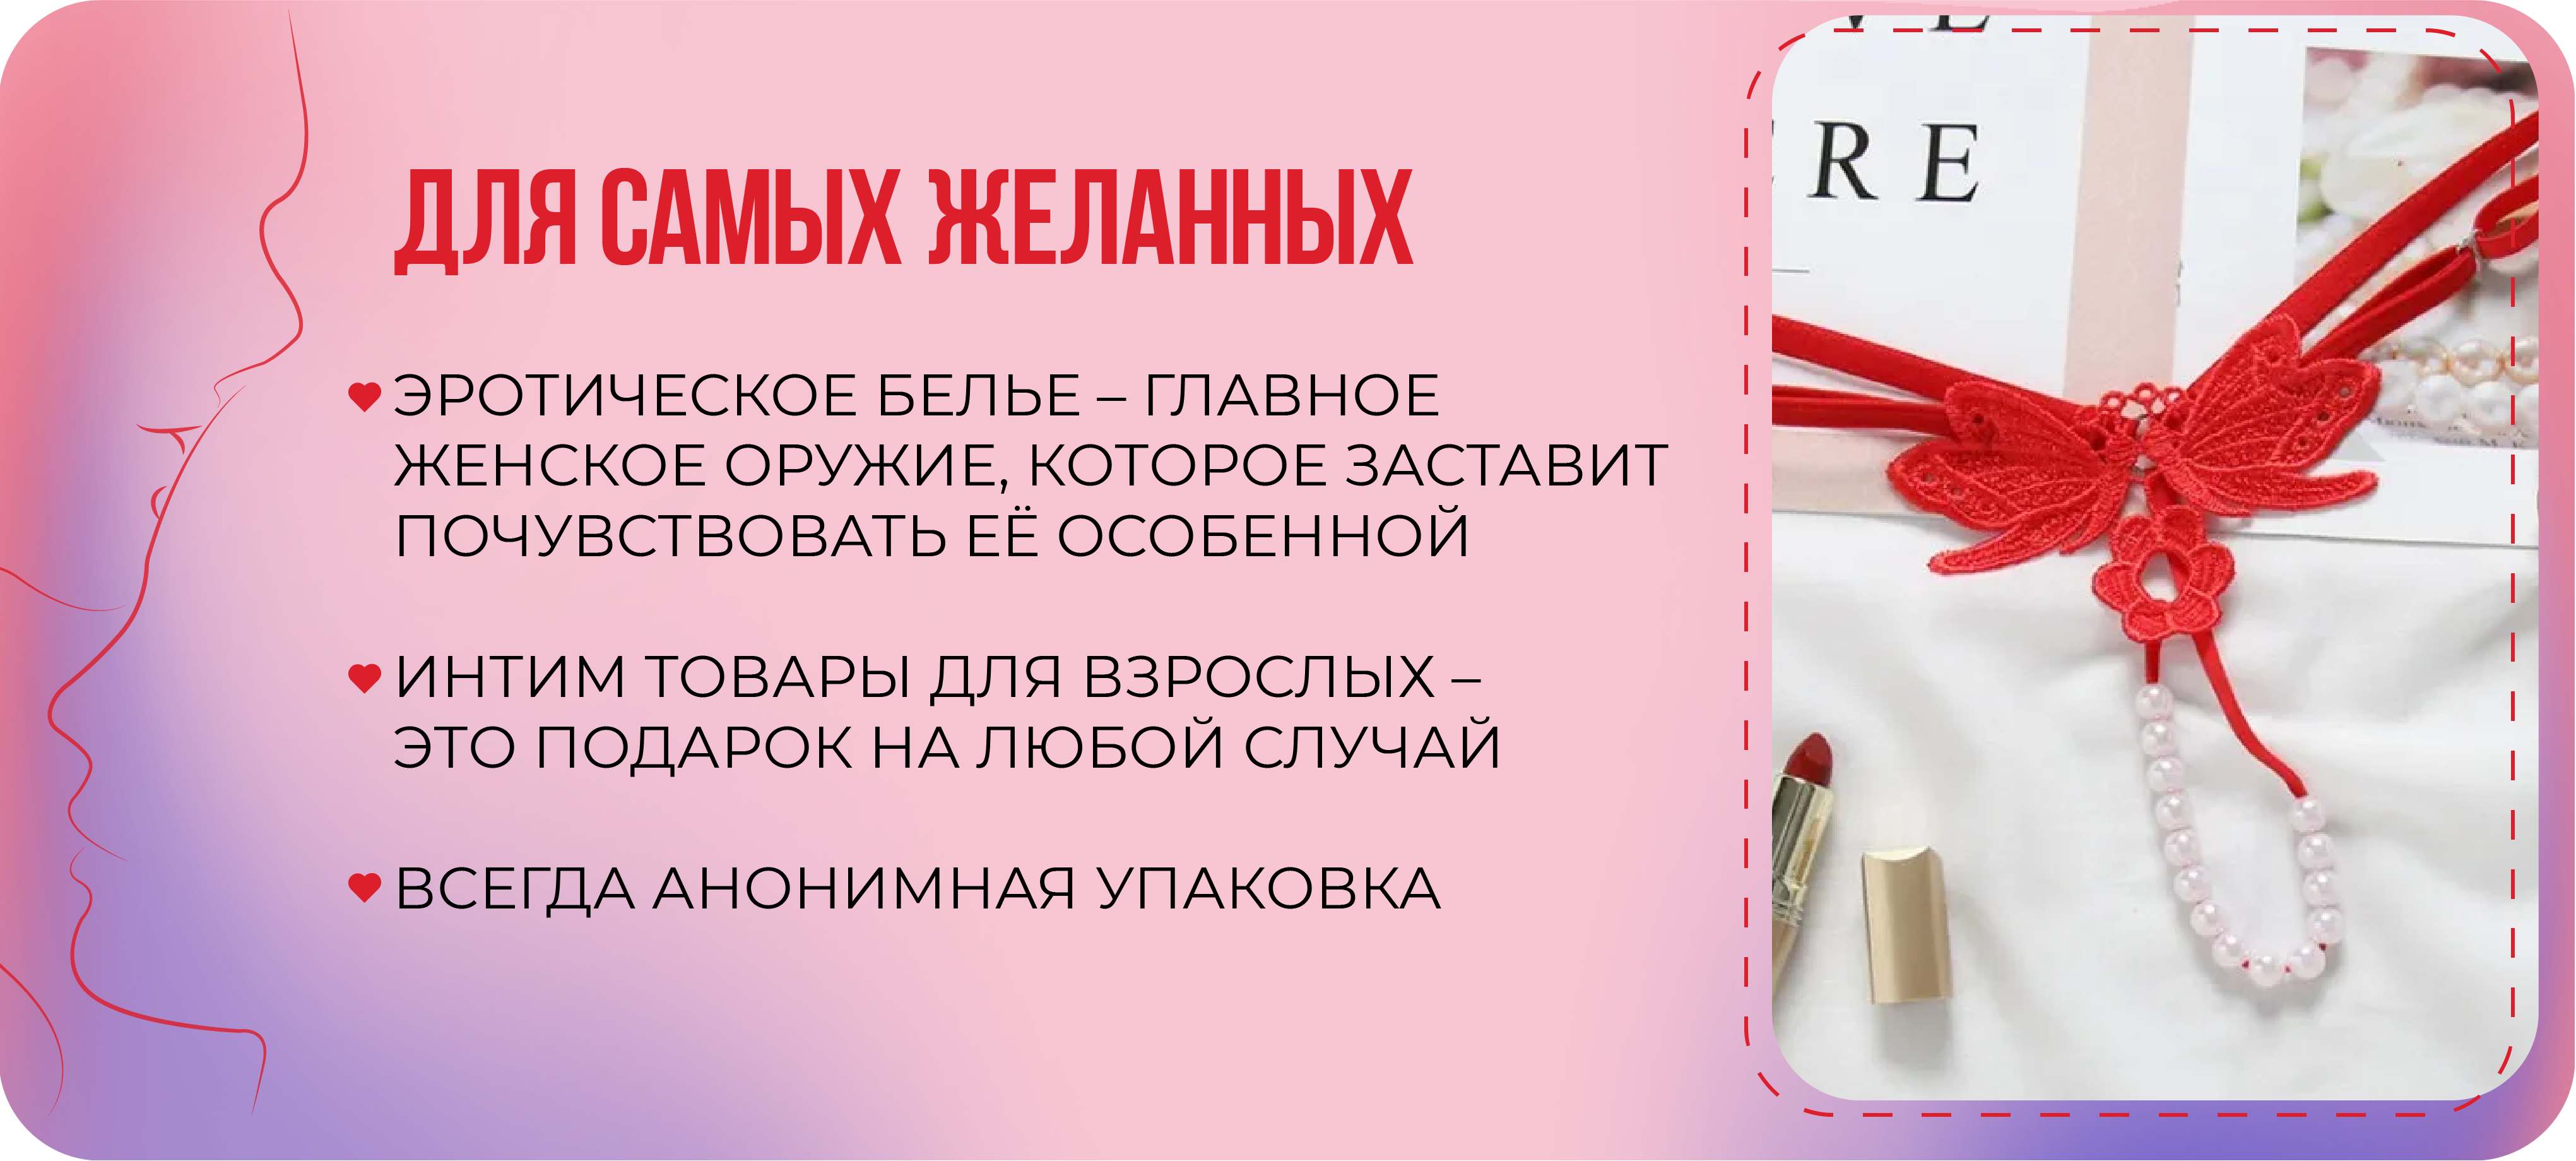 Каталог интим-товаров (18+) для взрослых | Интернет-магазин «Kazanova Academy» в Новосибирске